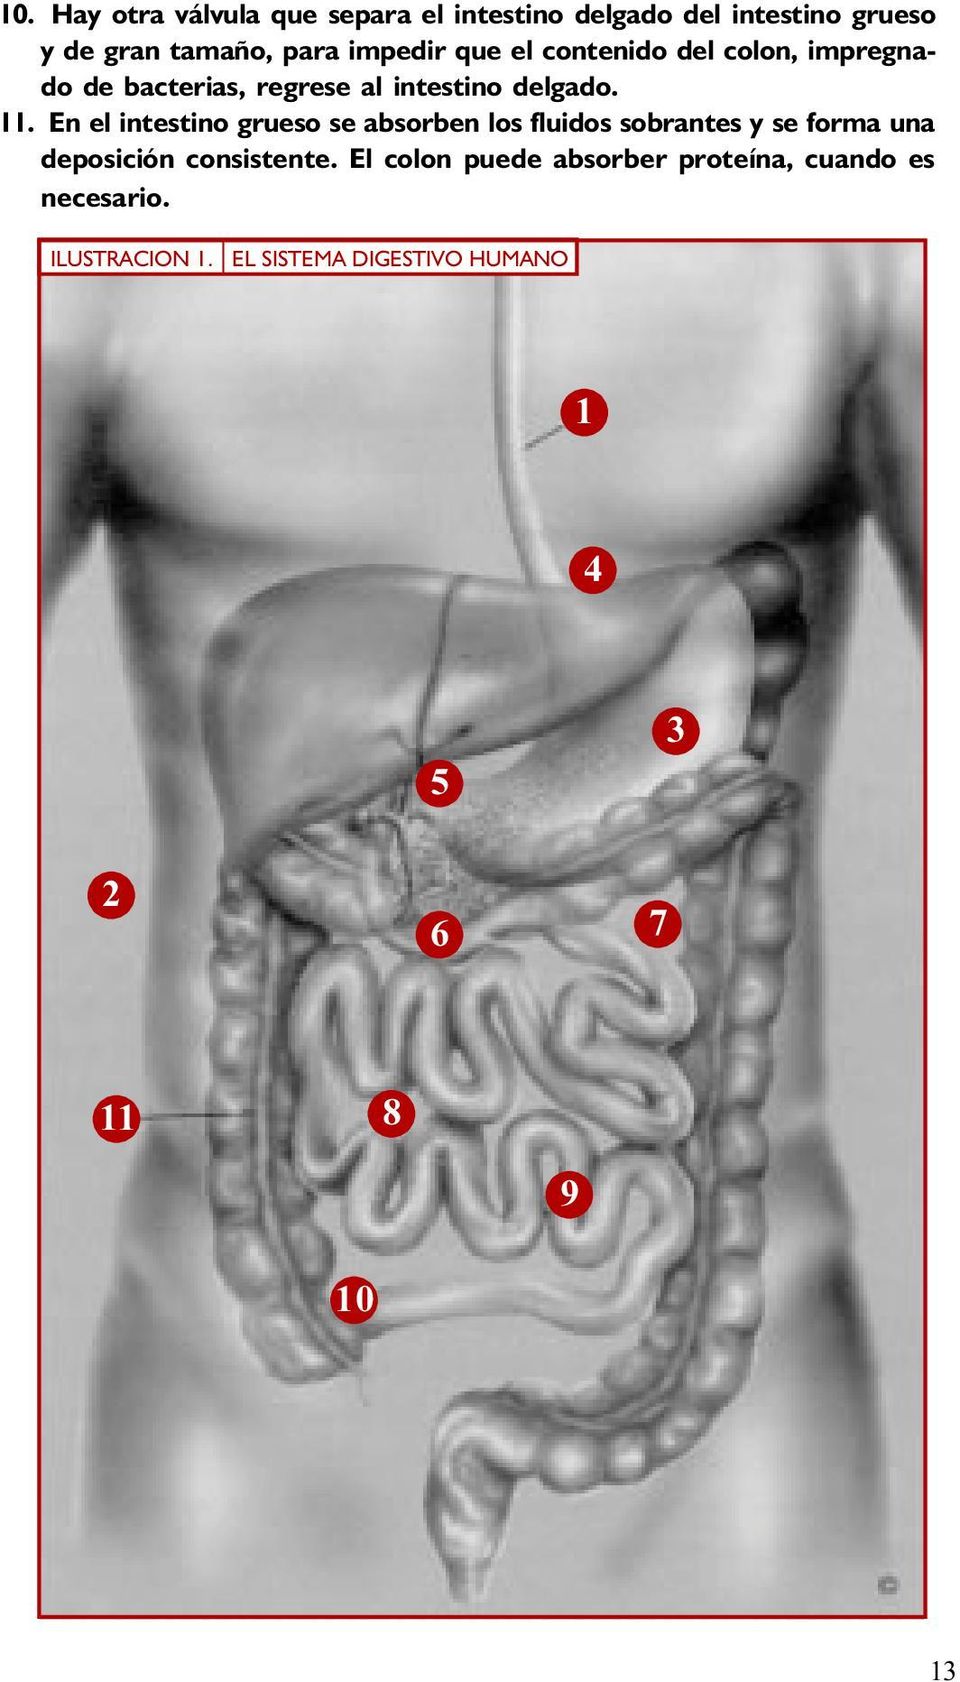 En el intestino grueso se absorben los fluidos sobrantes y se forma una deposición consistente.